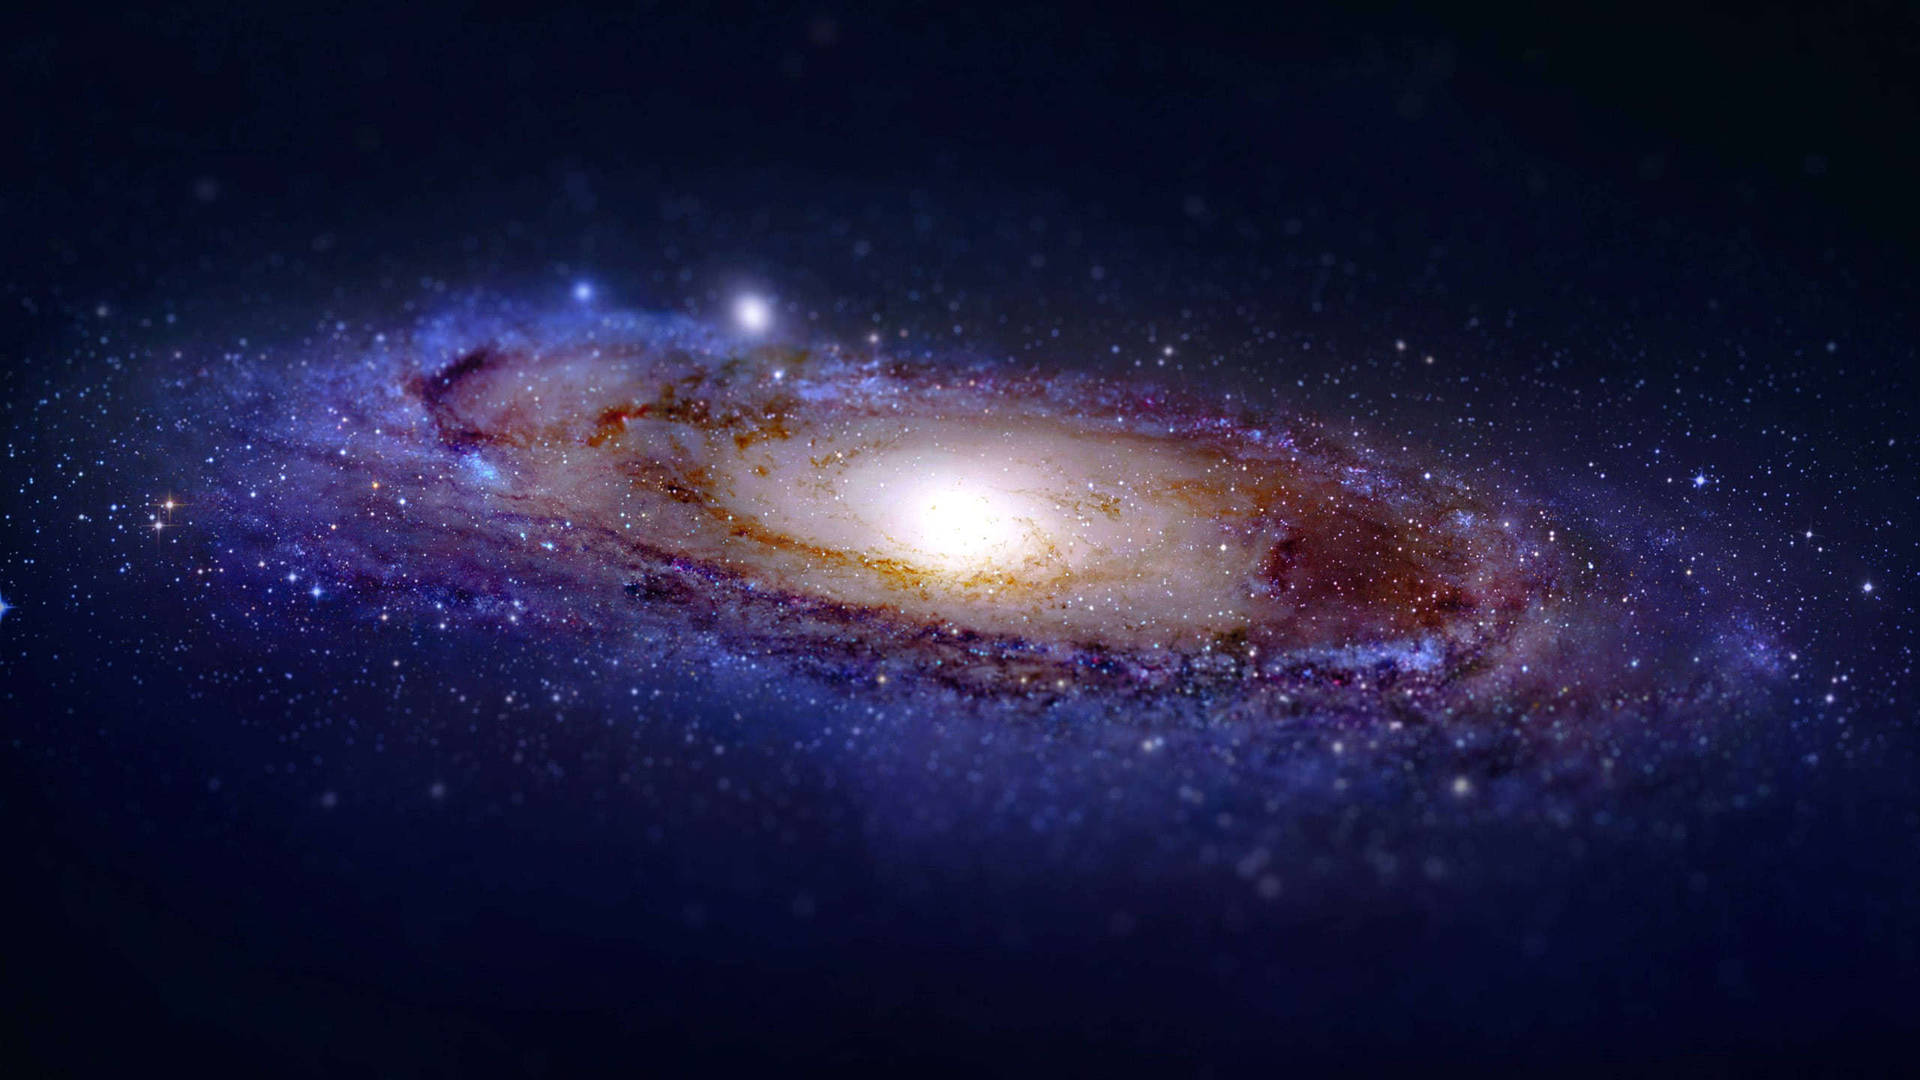 Spiral Milky Way Galaxy in dark blue space wallpaper